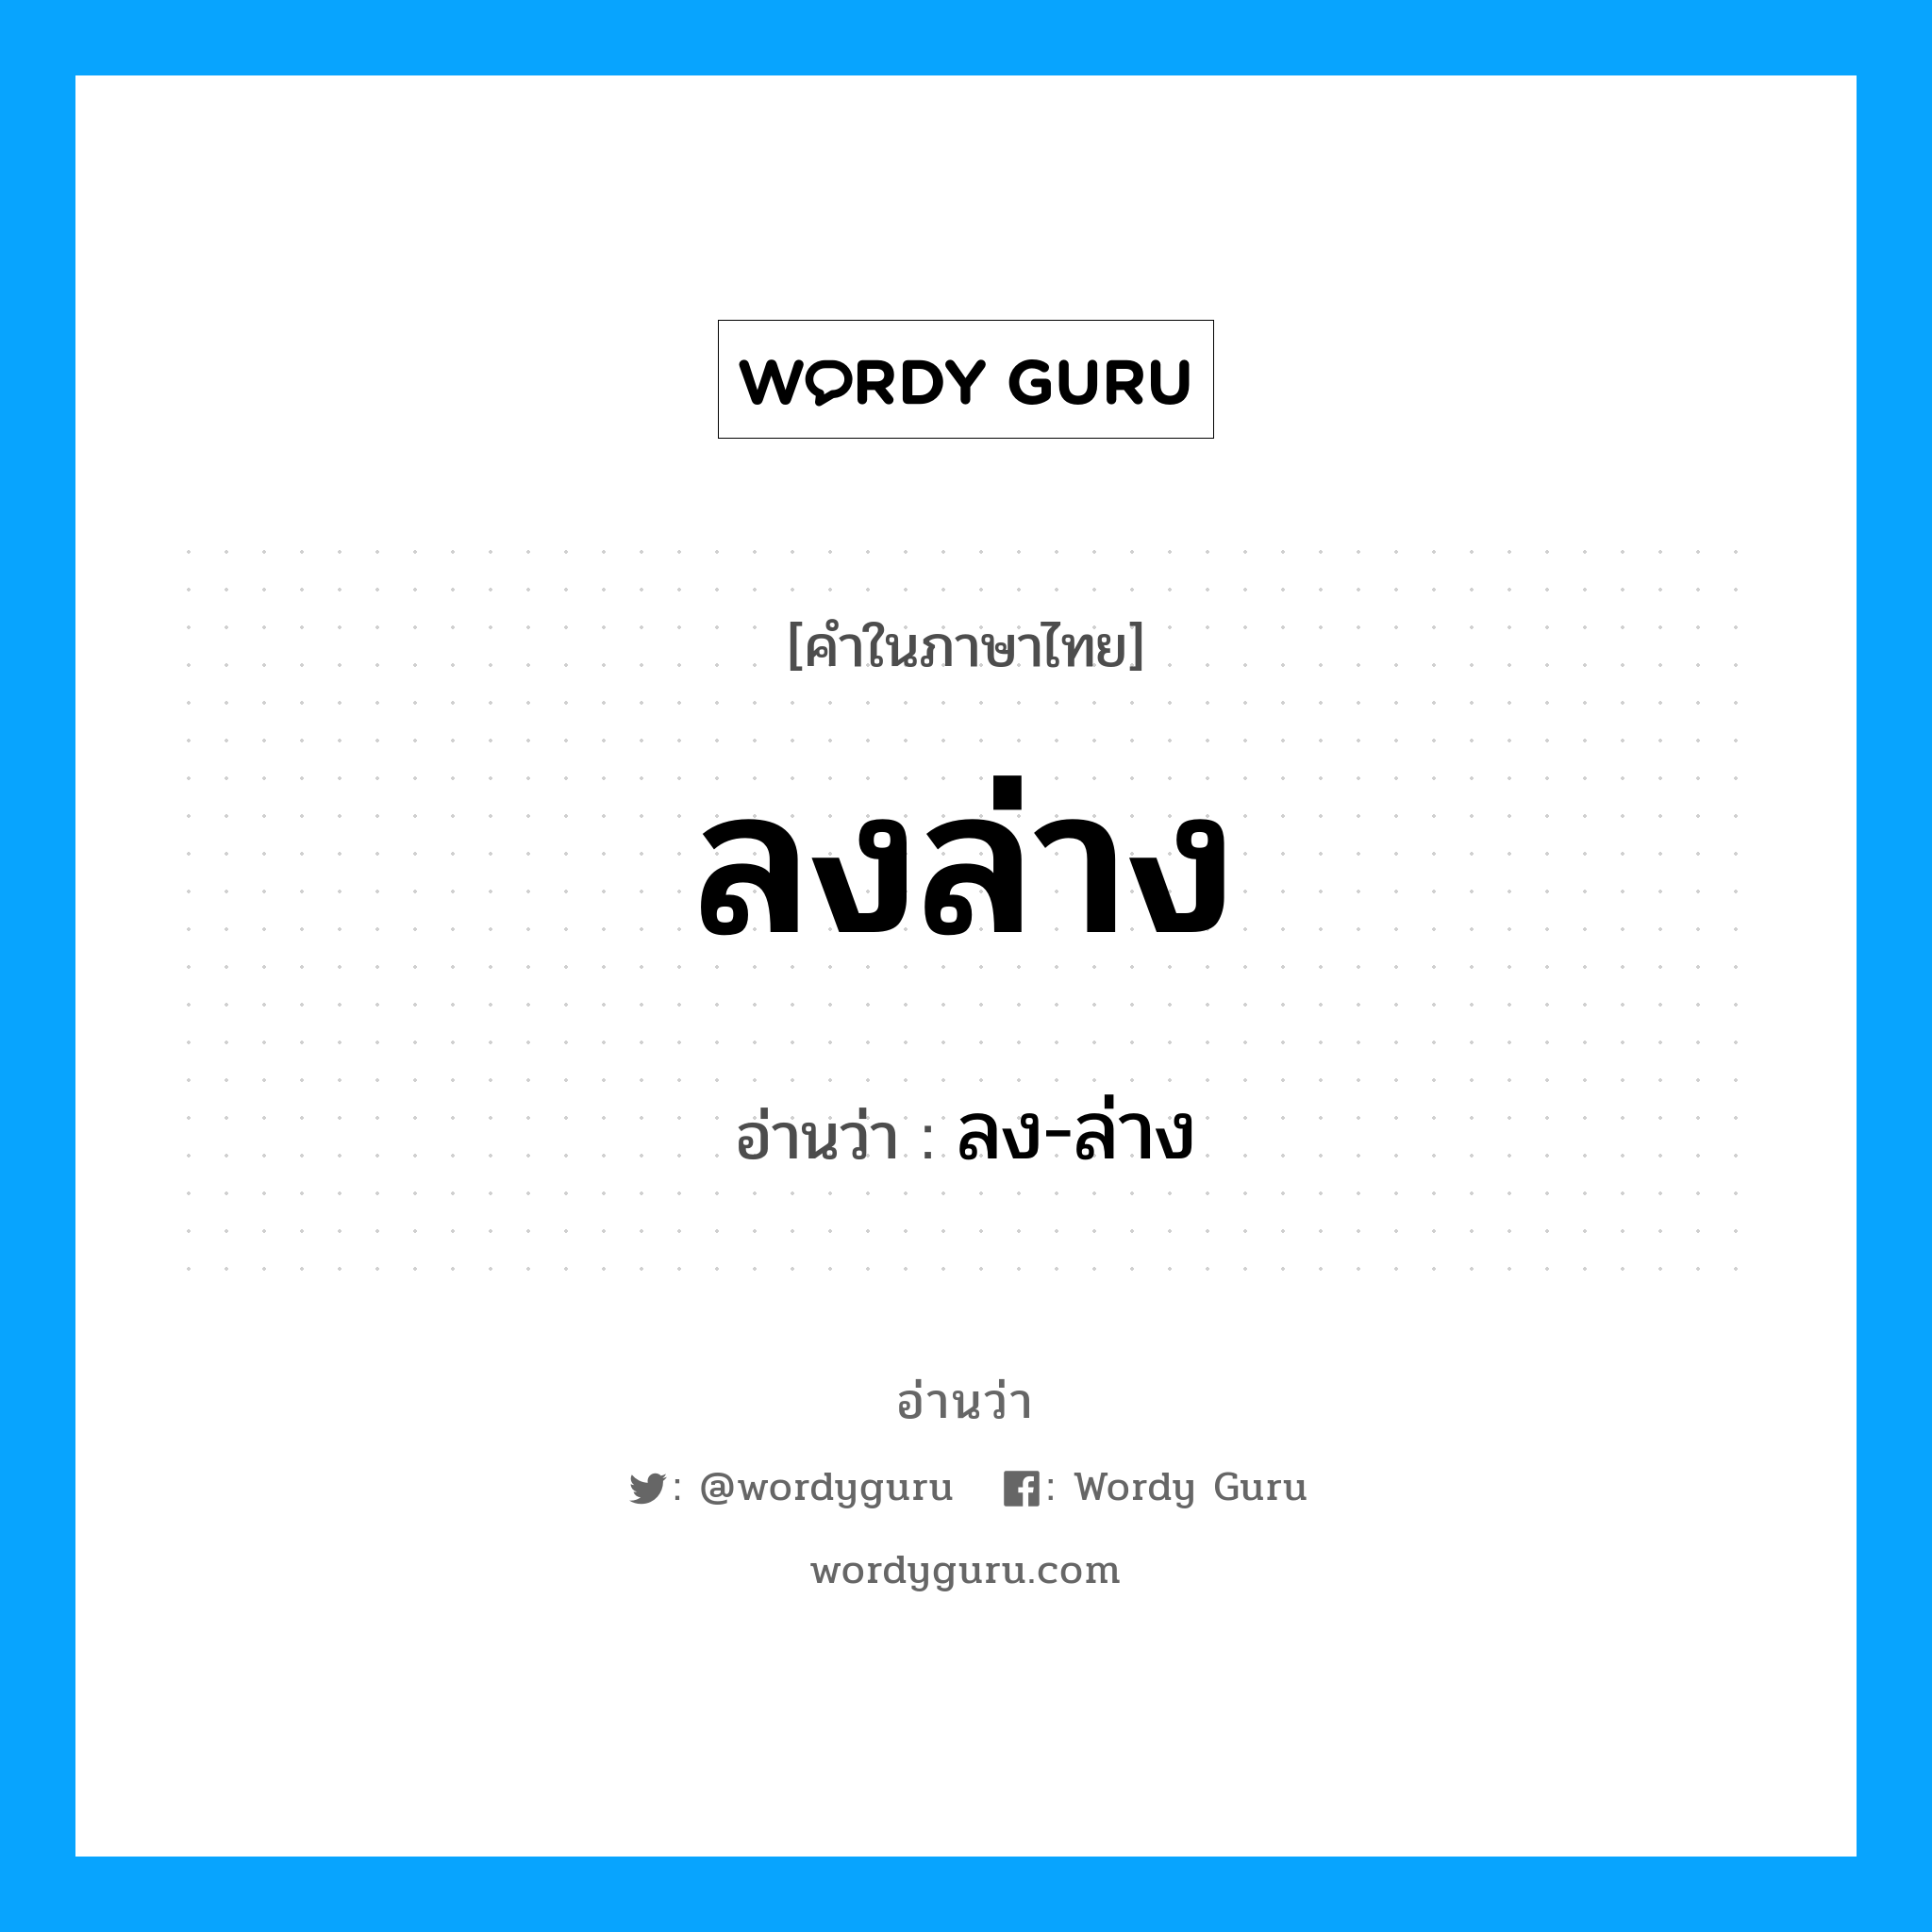 ลง-ล่าง เป็นคำอ่านของคำไหน?, คำในภาษาไทย ลง-ล่าง อ่านว่า ลงล่าง